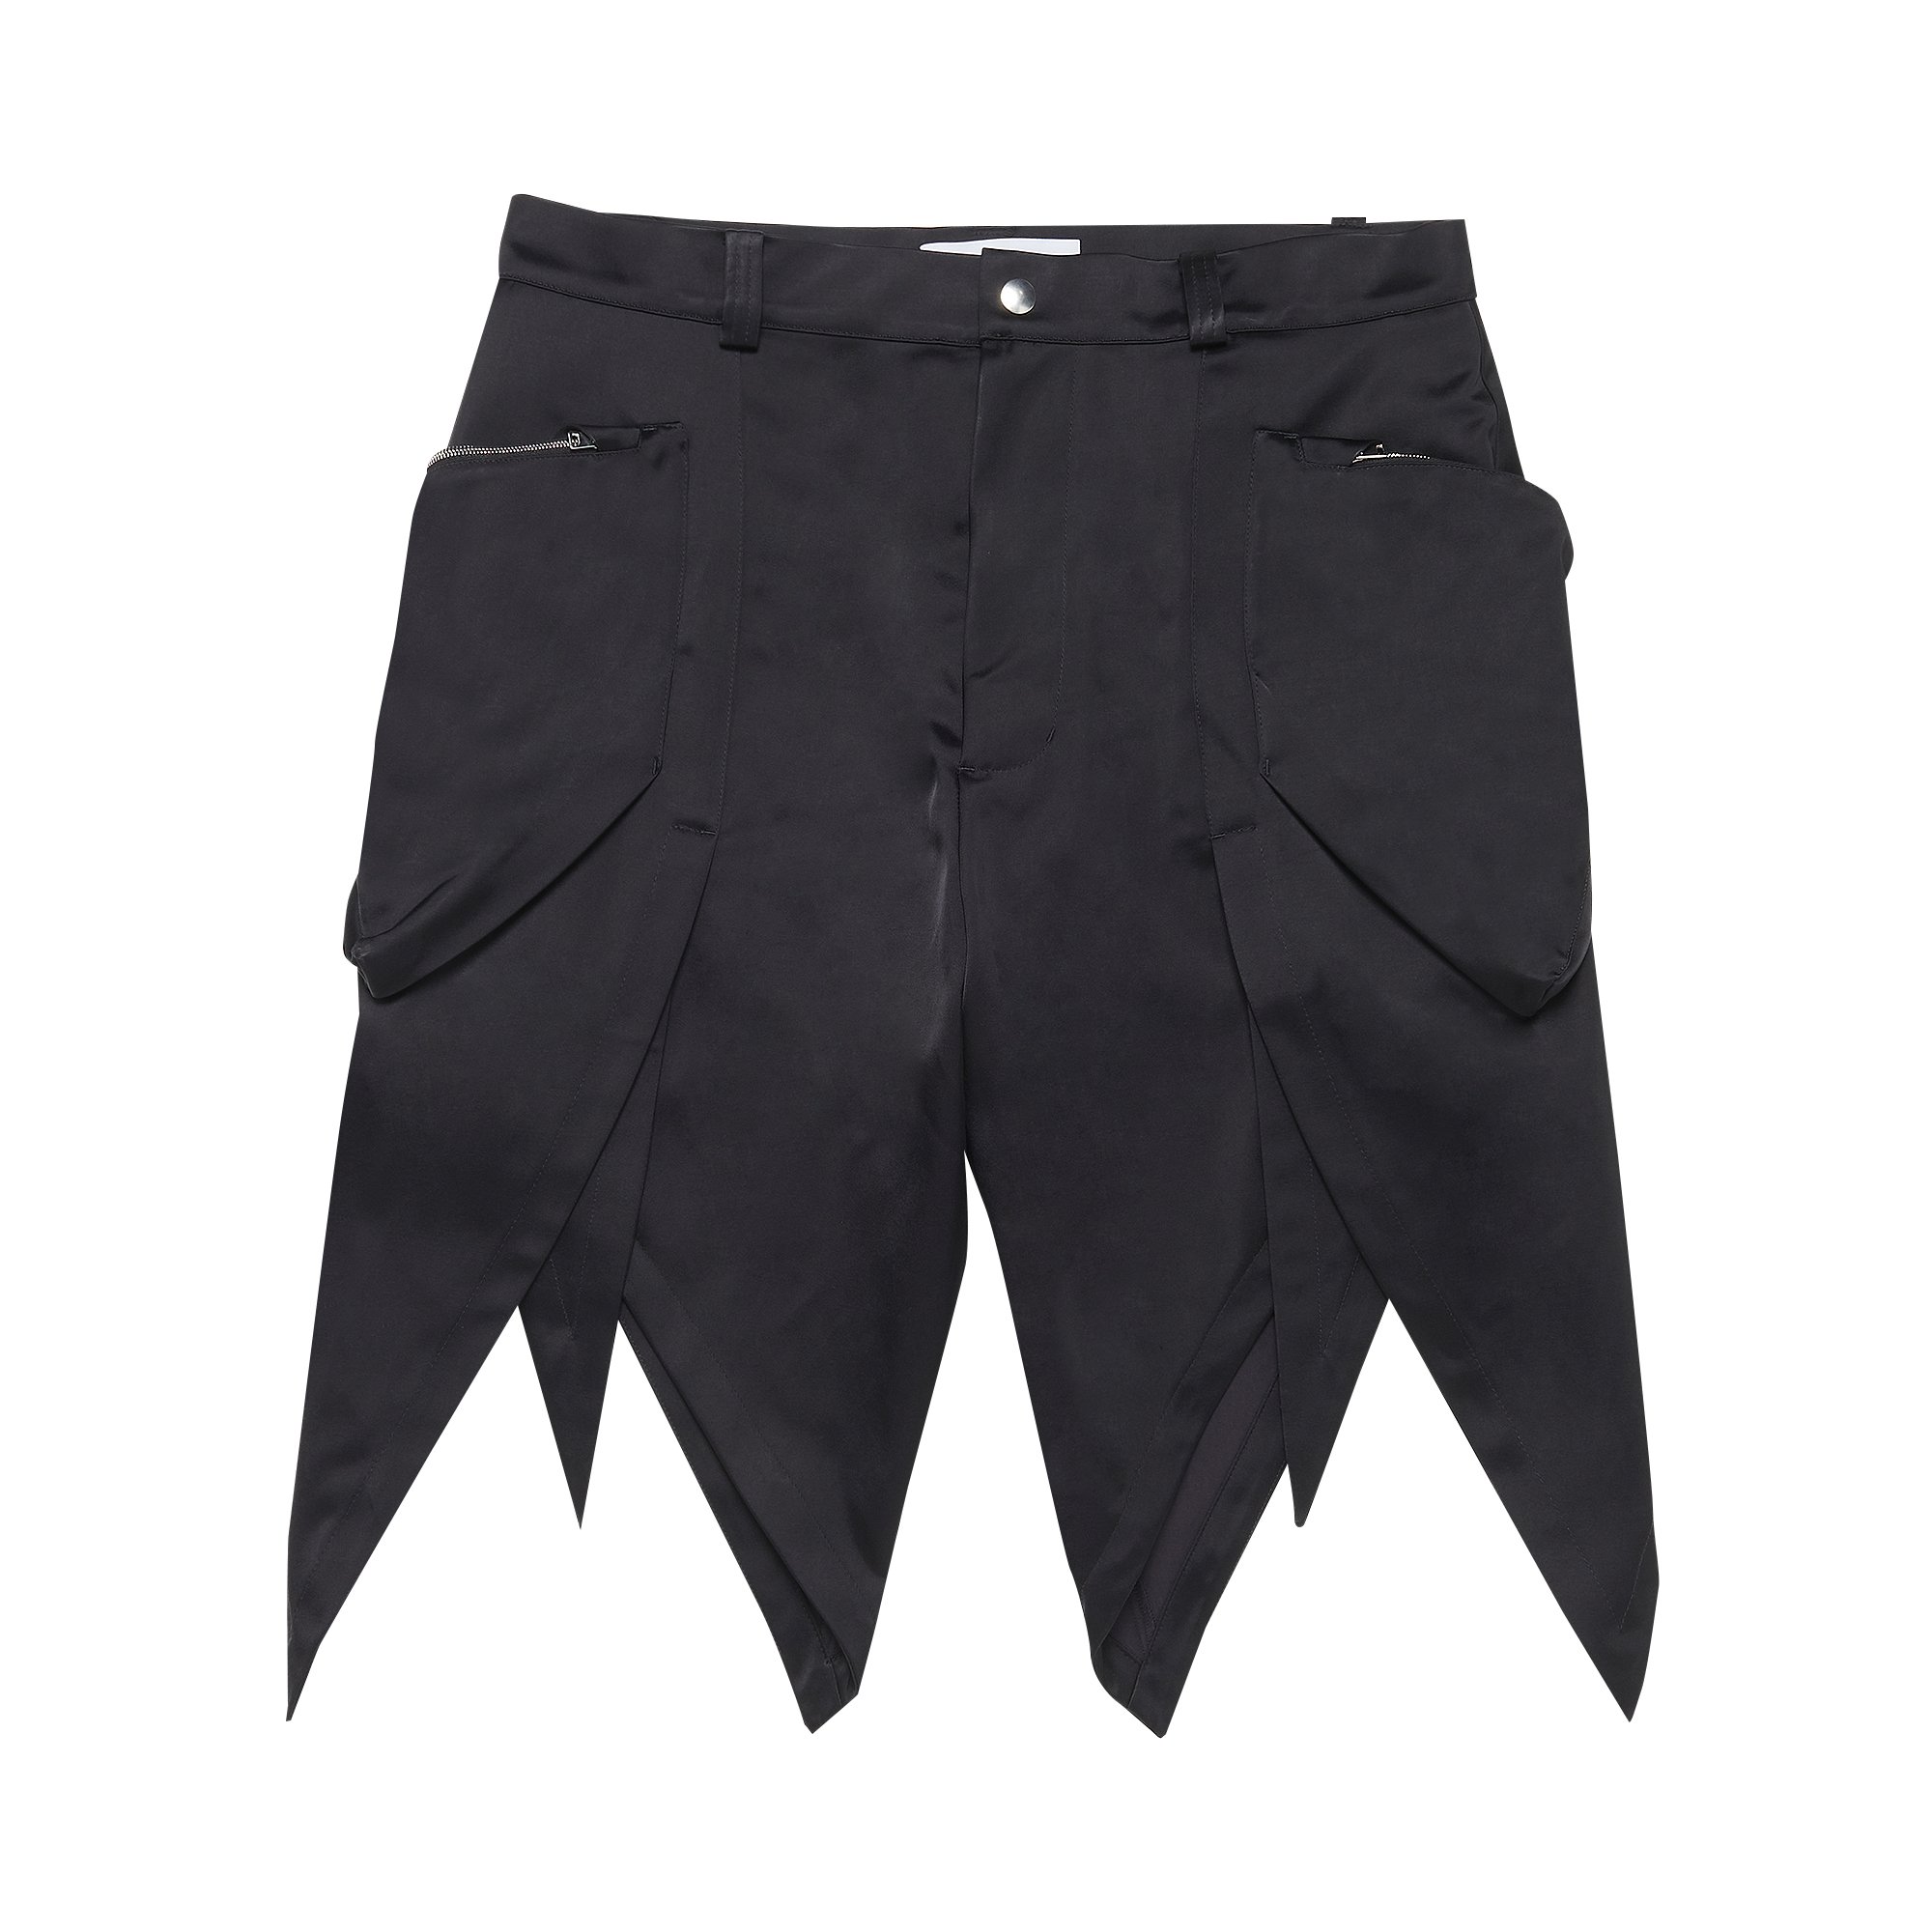 Buy Kiko Kostadinov Torino Shorts 'Ink' - KKSS22T06 16 BLAC | GOAT